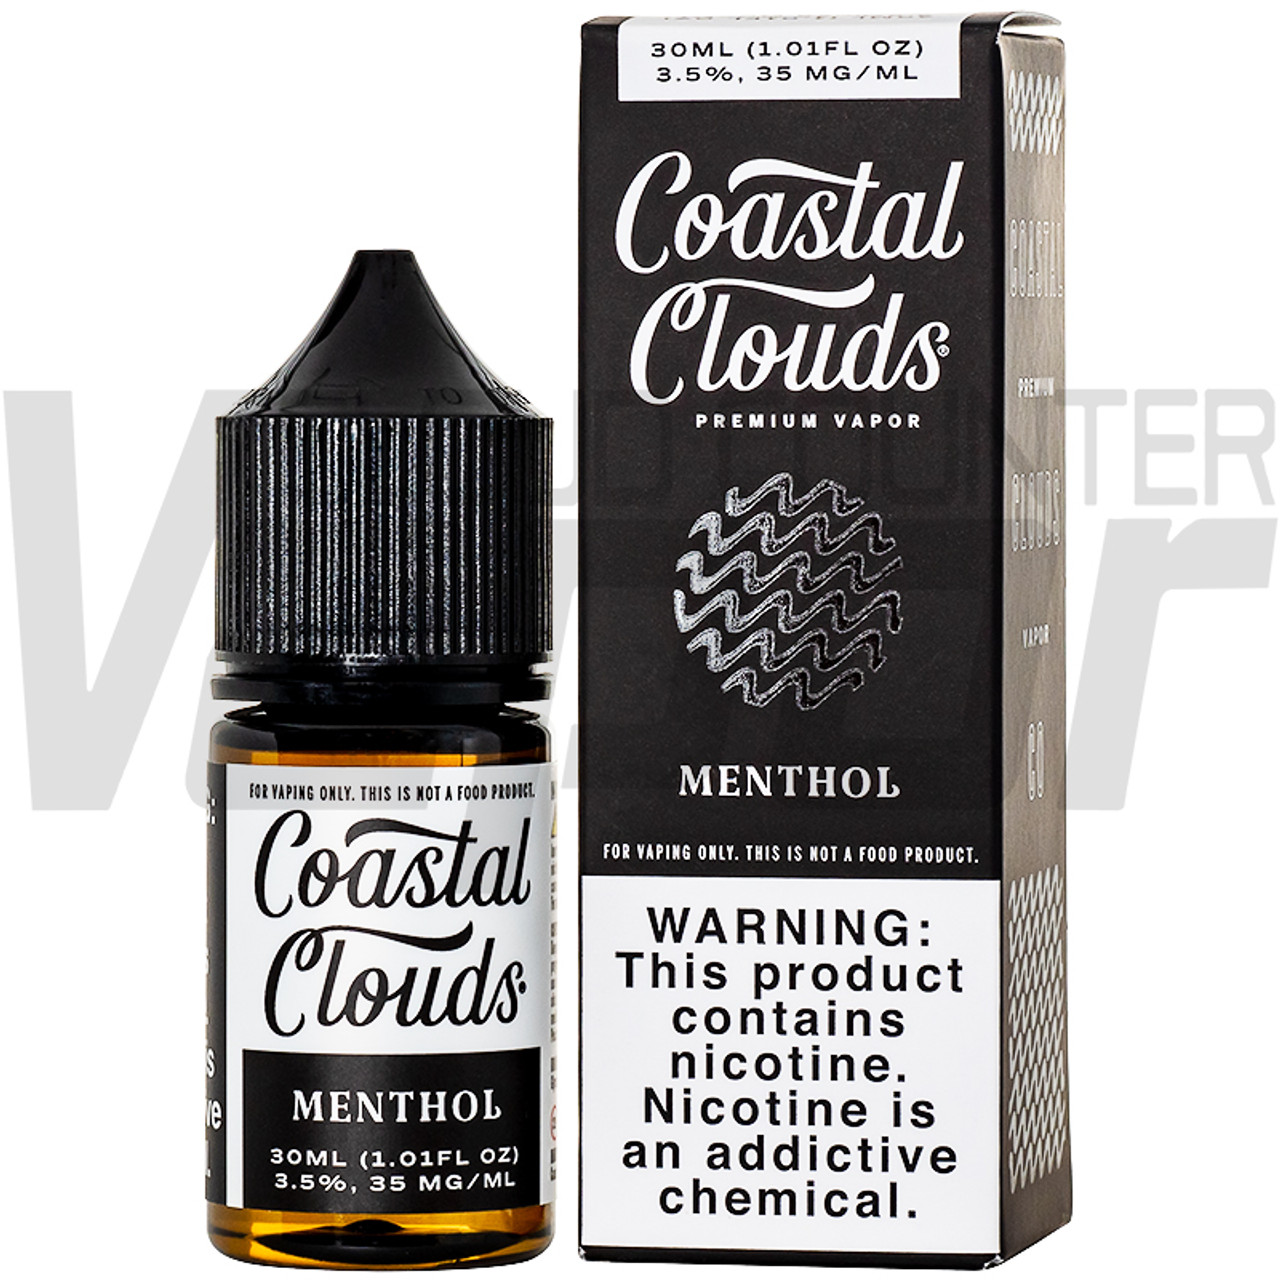 The Finest Cotton Clouds Menthol 30ml Nic Salt Juice